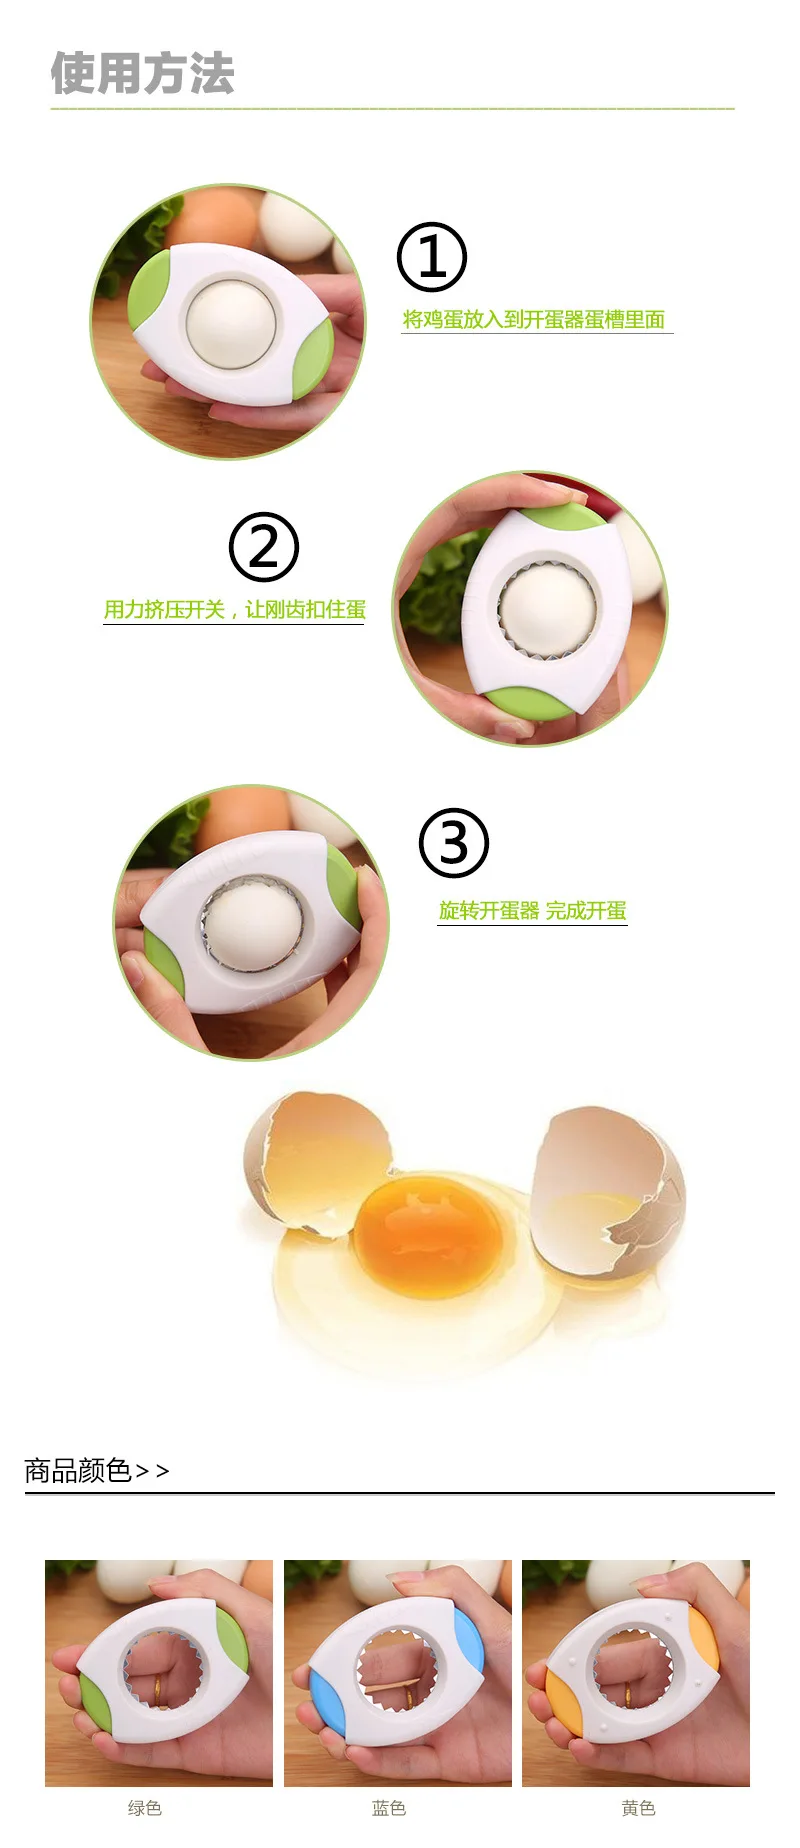 Новые приспособления для яиц в скорлупе пилинг в скорлупе для вареных яиц Инструменты Кухонные гаджеты для суши ресторана